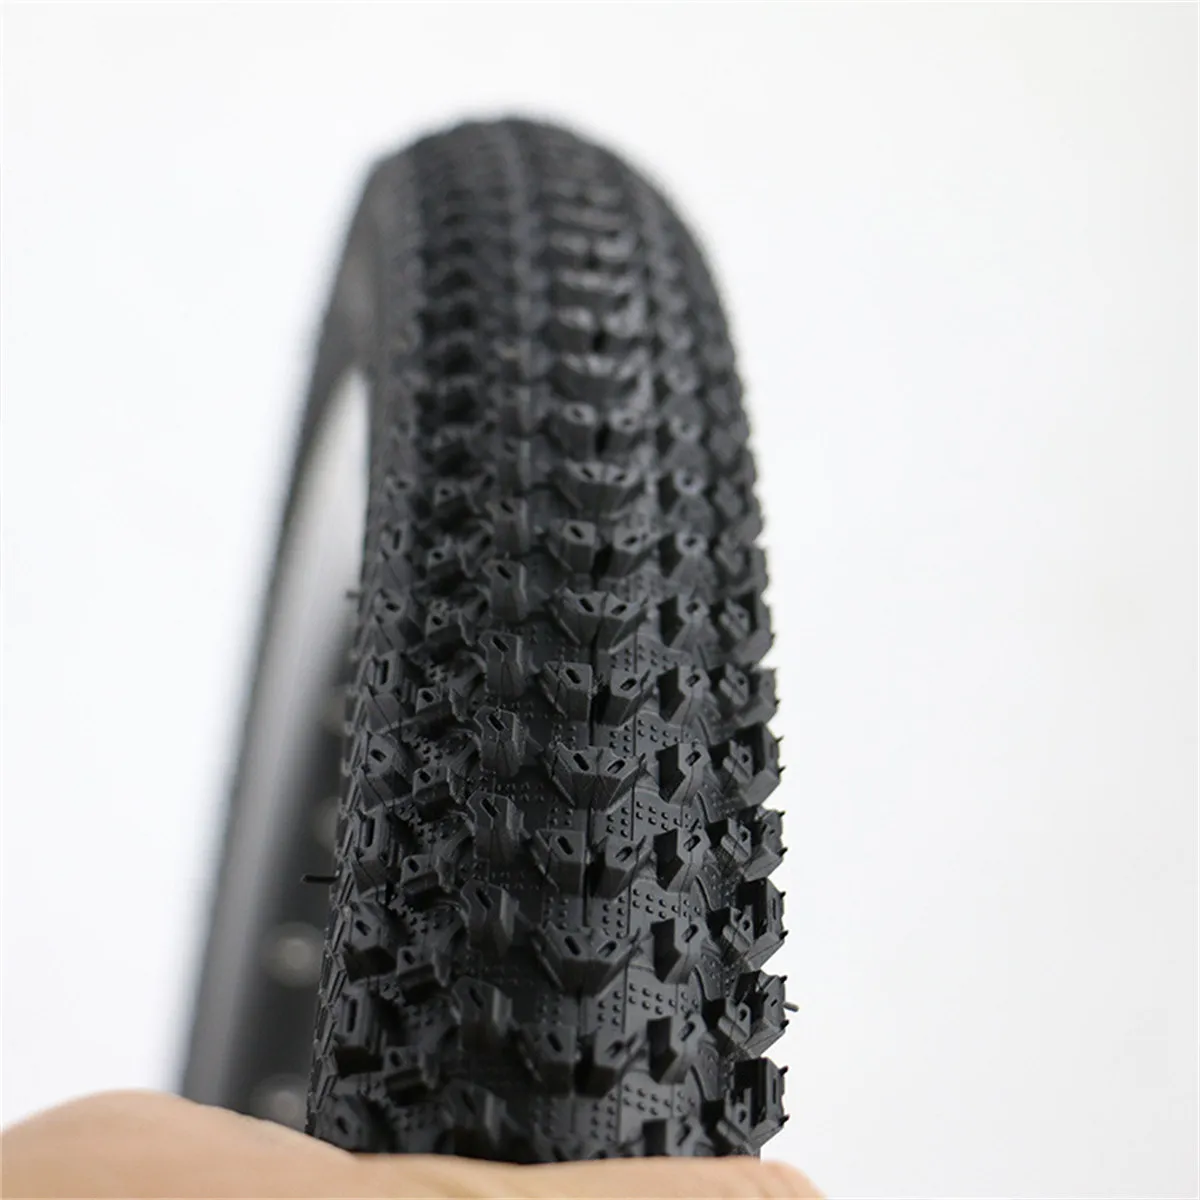 Black Bicycle Tires